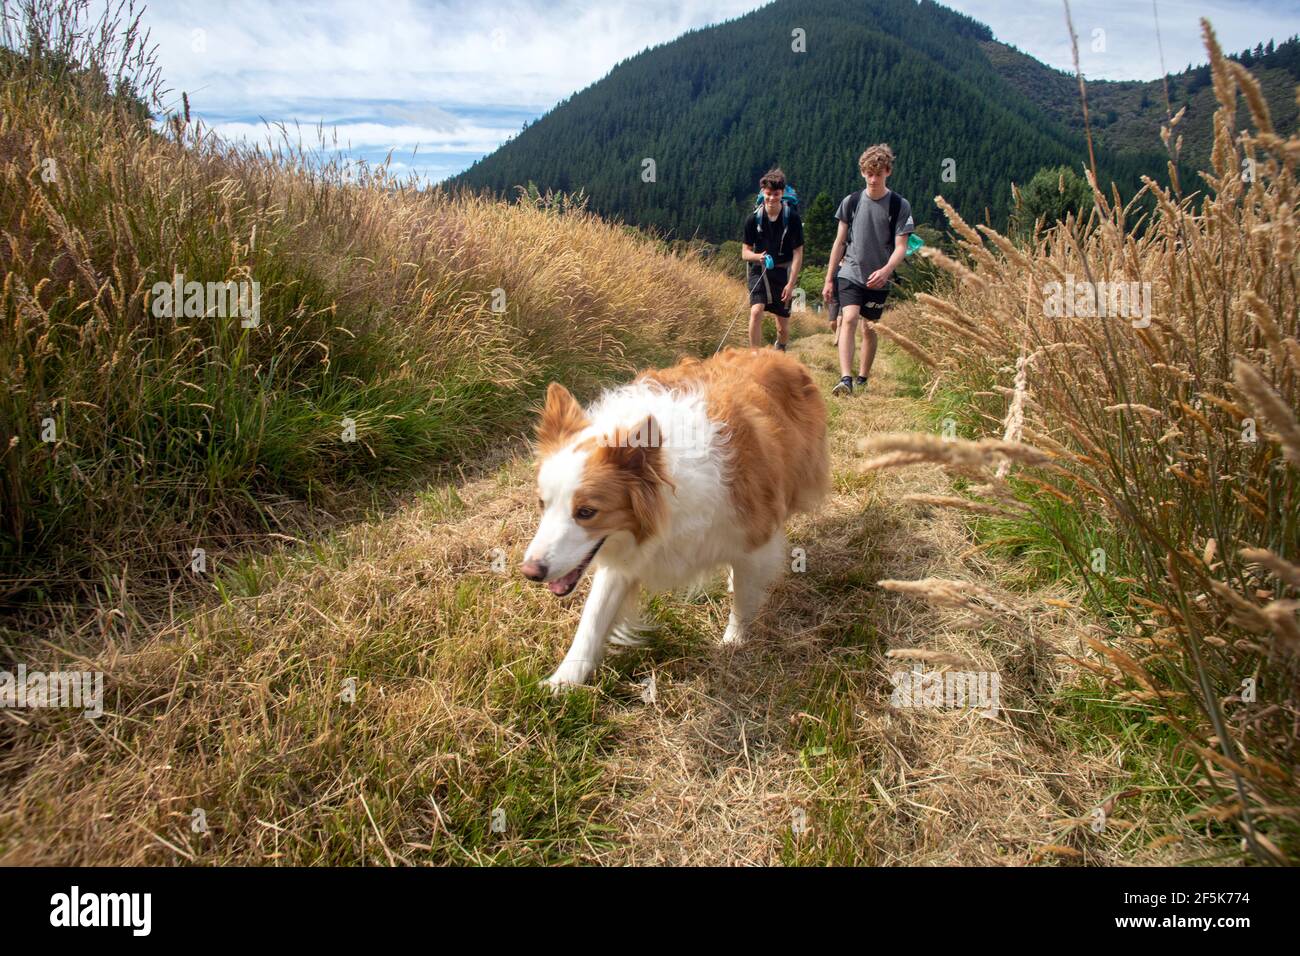 Nydia Track with a dog, Kaiuma Bay to Duncan Bay, Marlborough, New Zealand Stock Photo